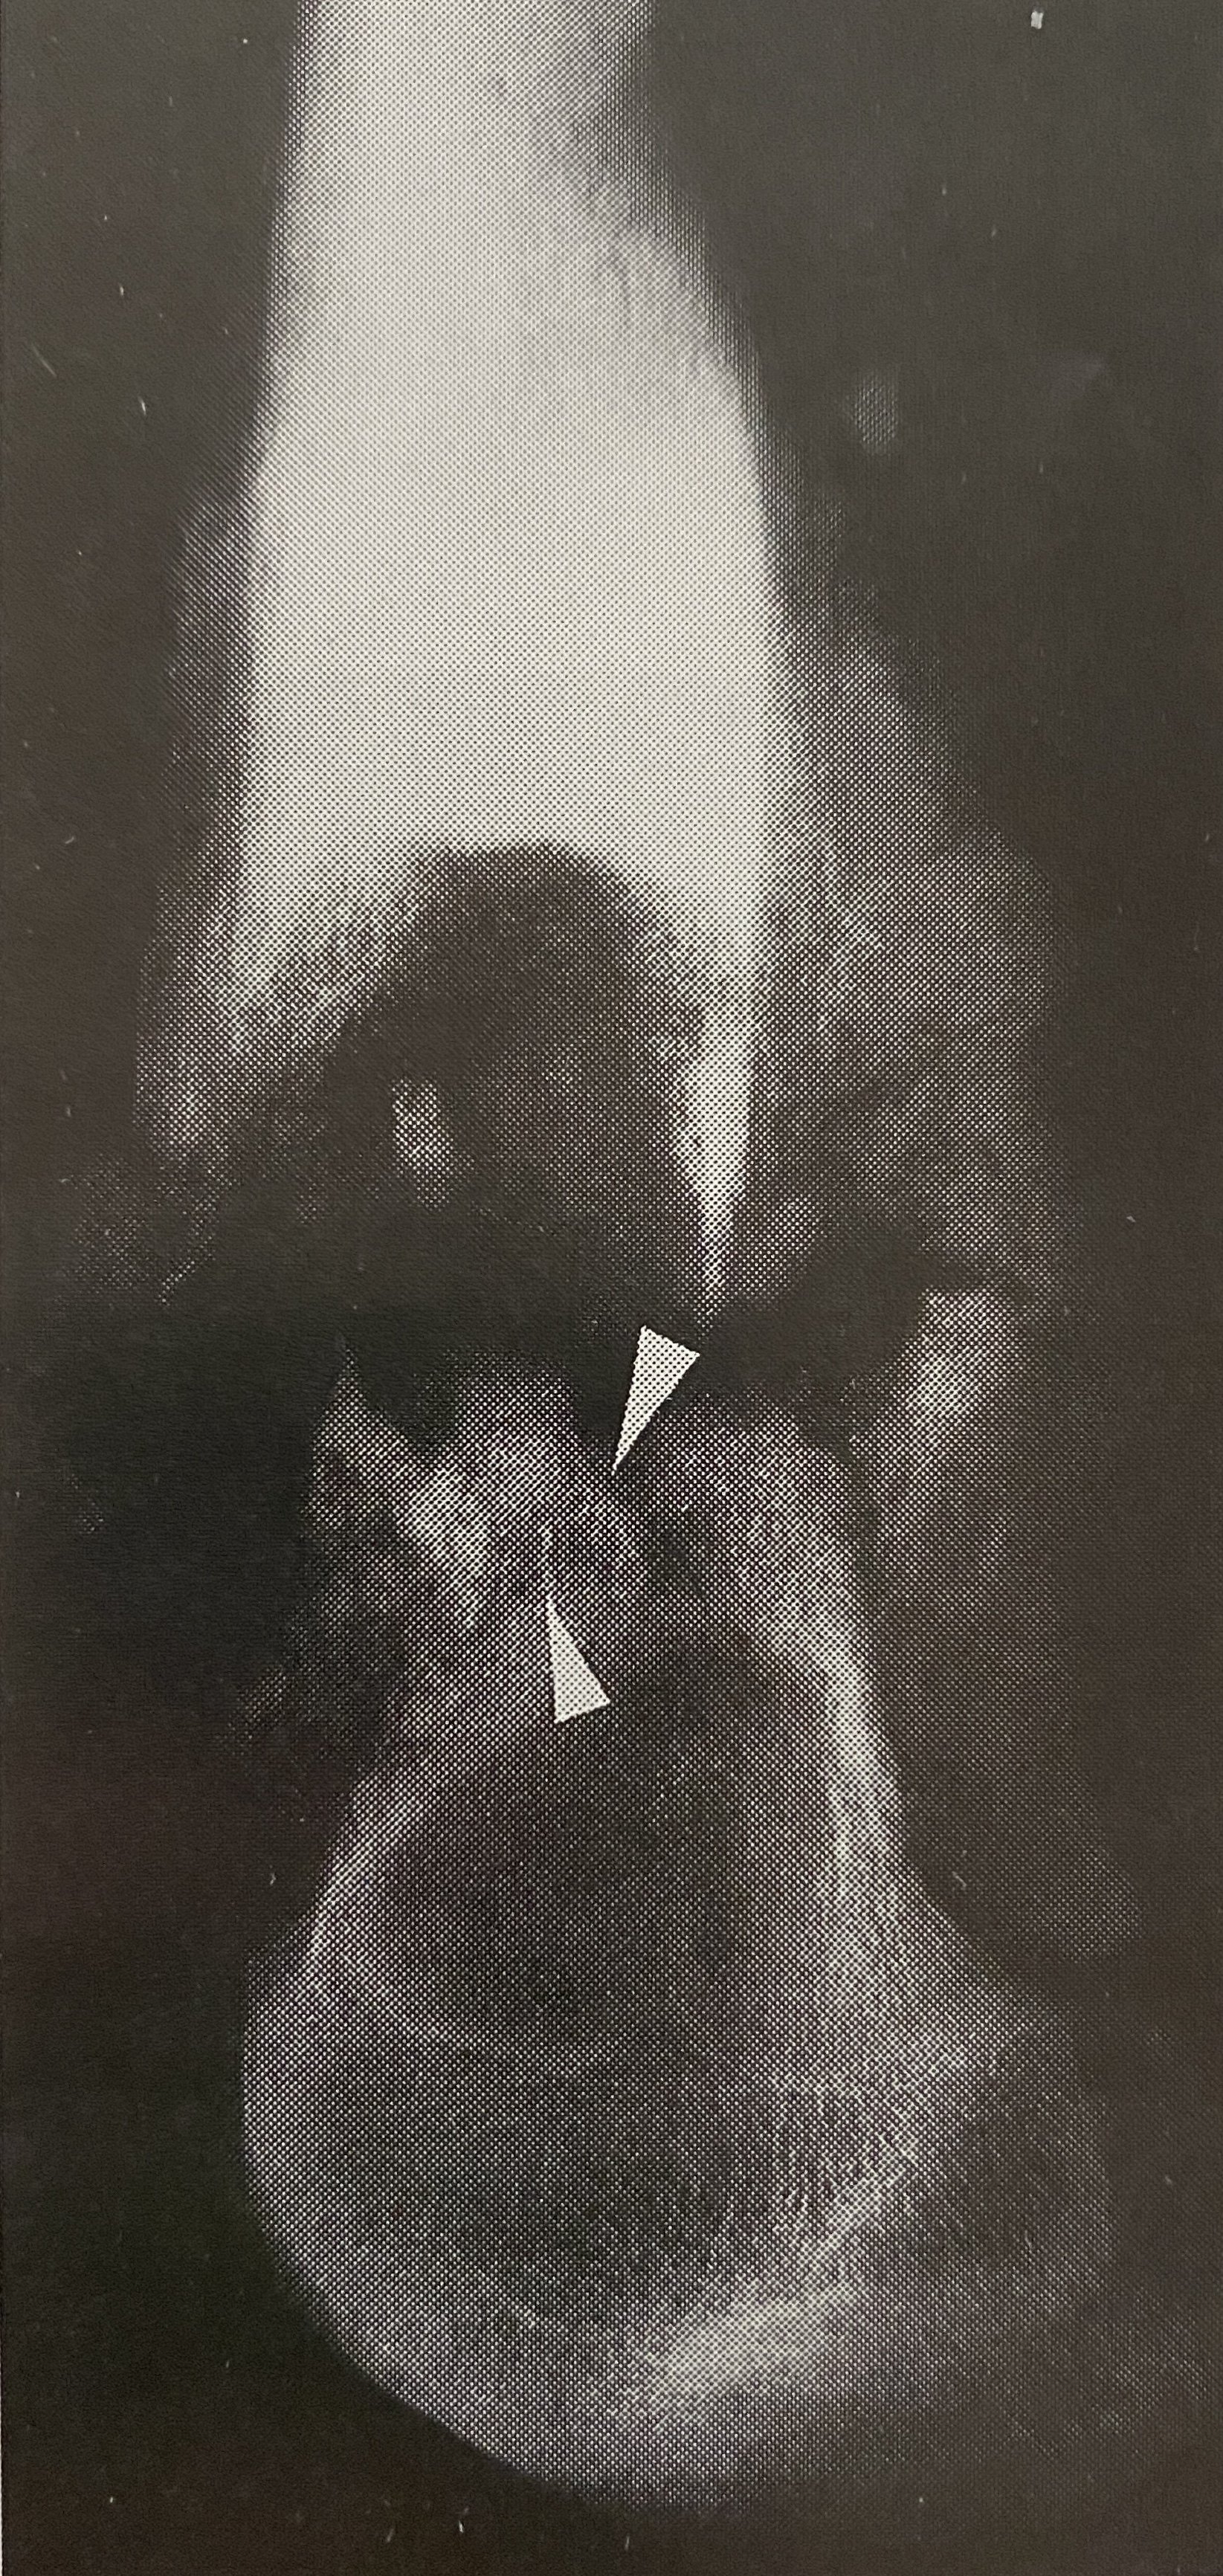 针状骨间的平行血管及棉絮样瘤骨 股骨下端骨肉瘤截肢标本x线微血管